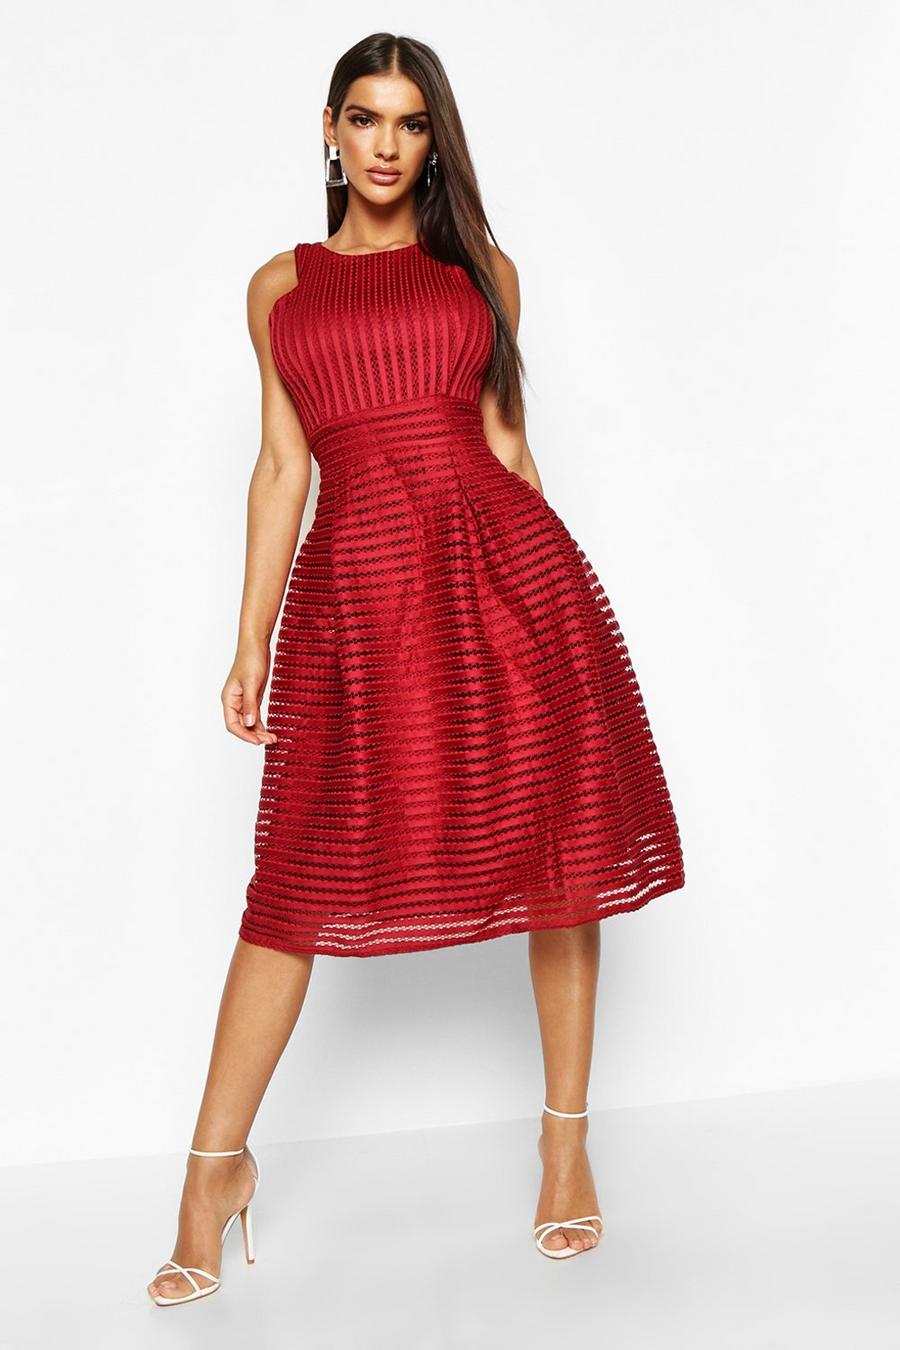 Berry red Boutique Panelled Full Skirt Skater Dress